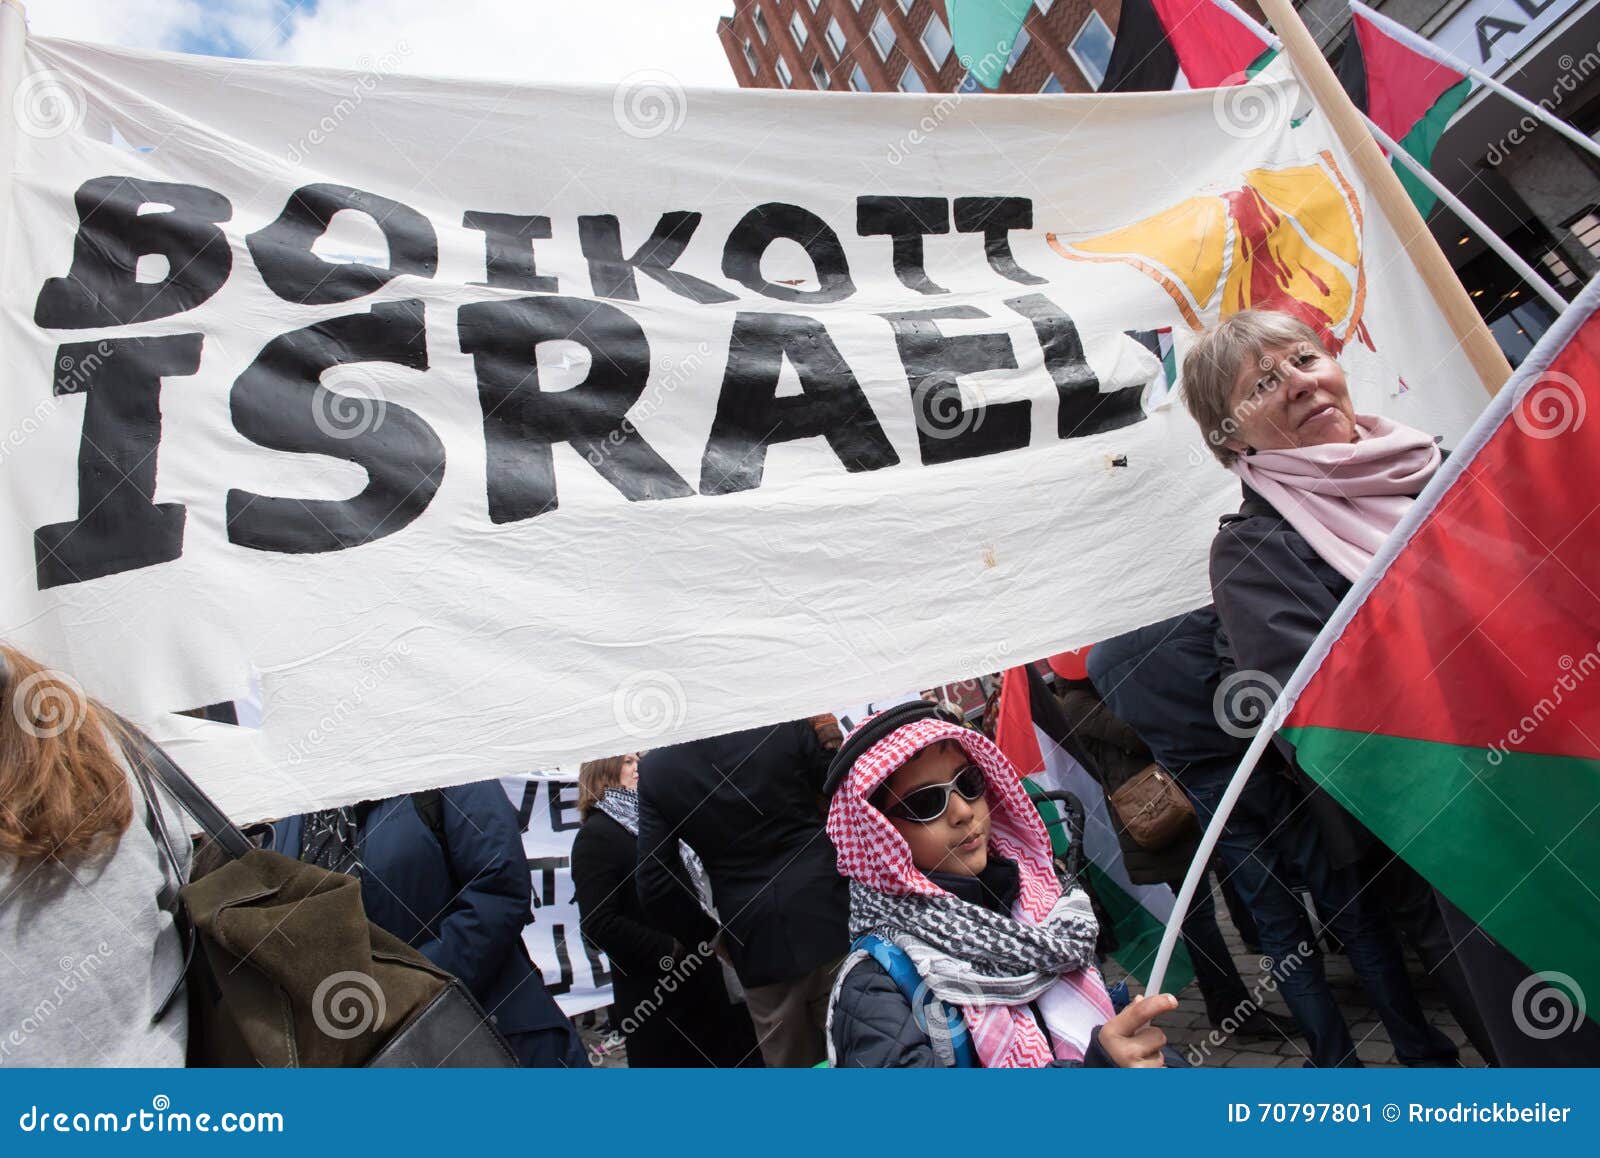 以色列千万人抗议 反极右政府司法改革_凤凰网视频_凤凰网